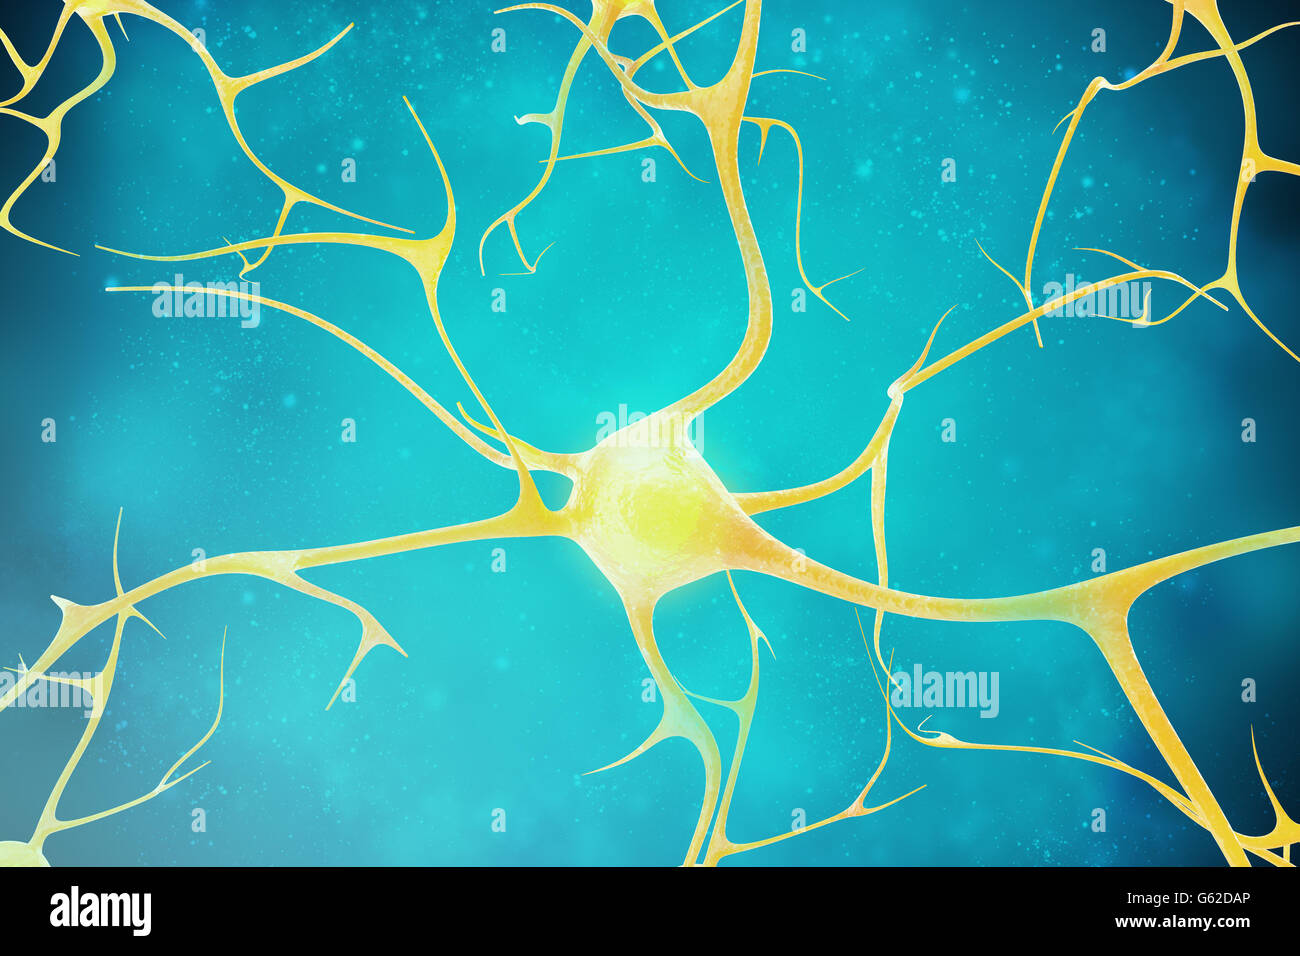 Les neurones dans le magnifique cadre. Illustration 3d de haute qualité Banque D'Images